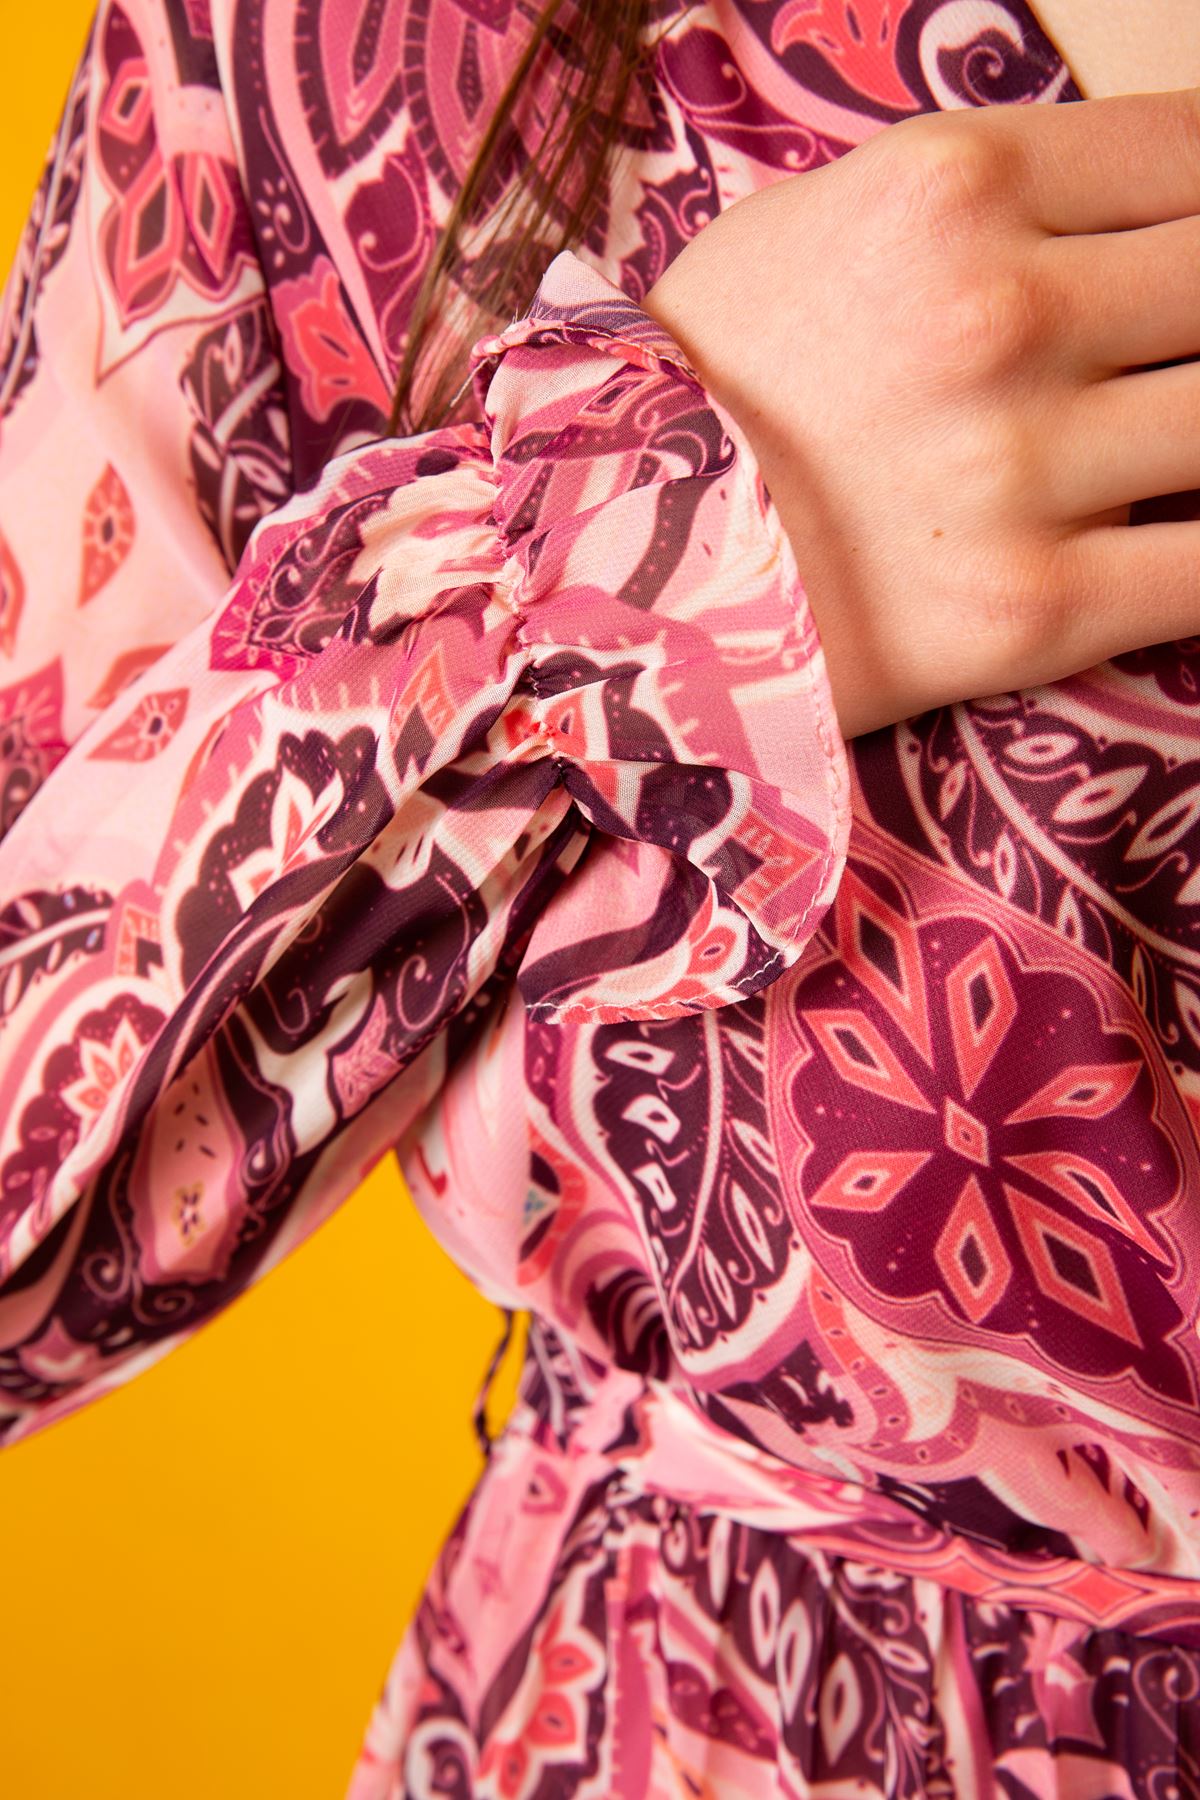 Chiffon Fabric Band Neck Shawl Pattern Women Dress - Pink